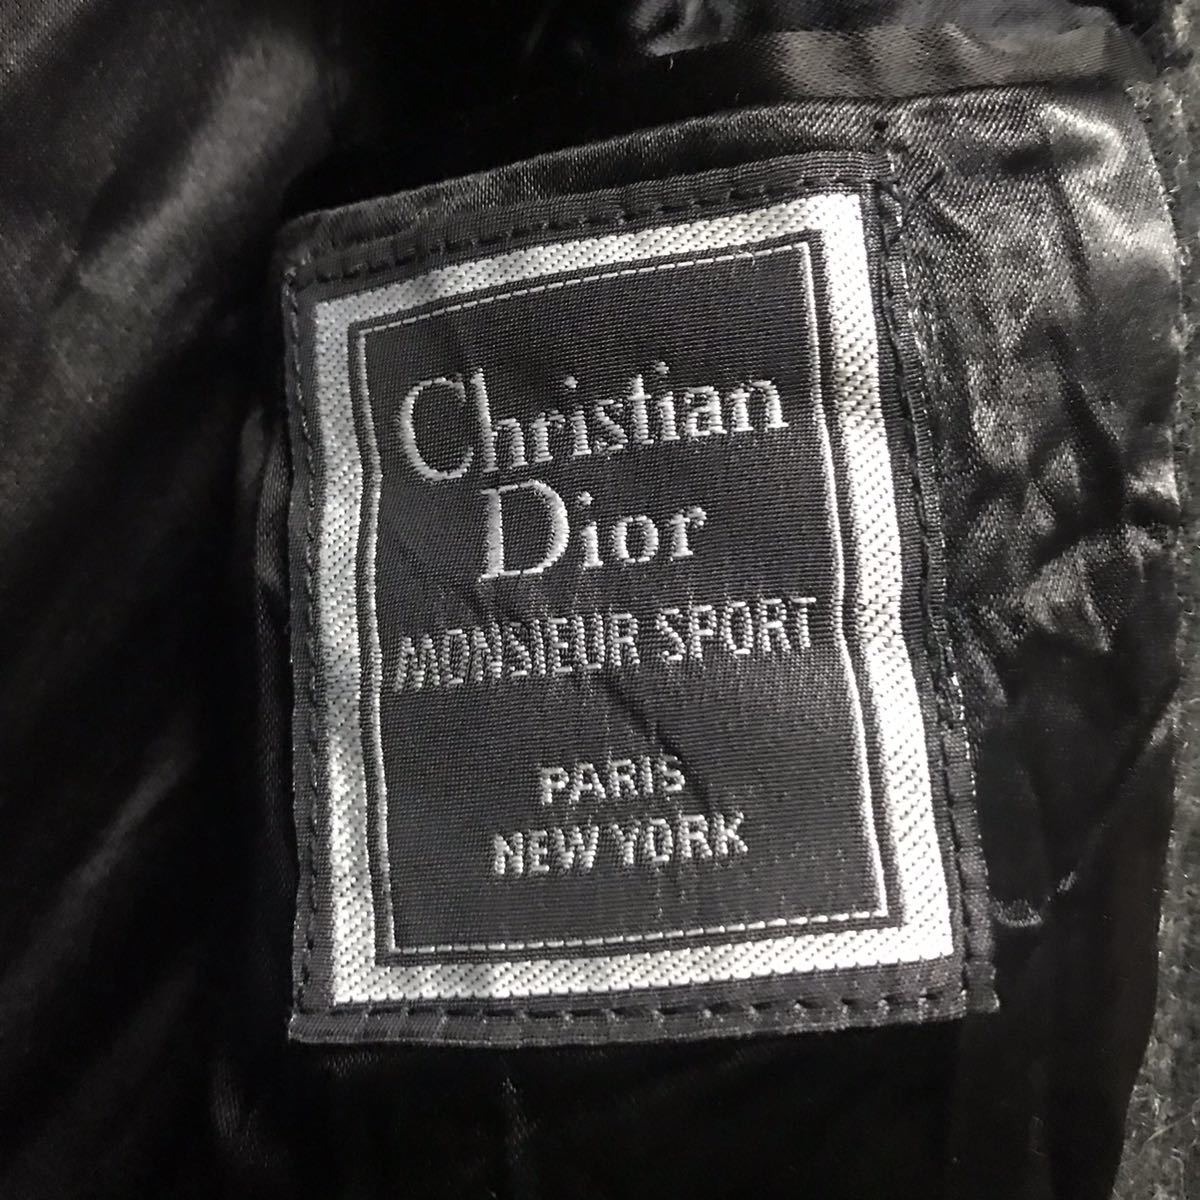 USA製 80s Christian Dior MONSIEUR クリスチャン